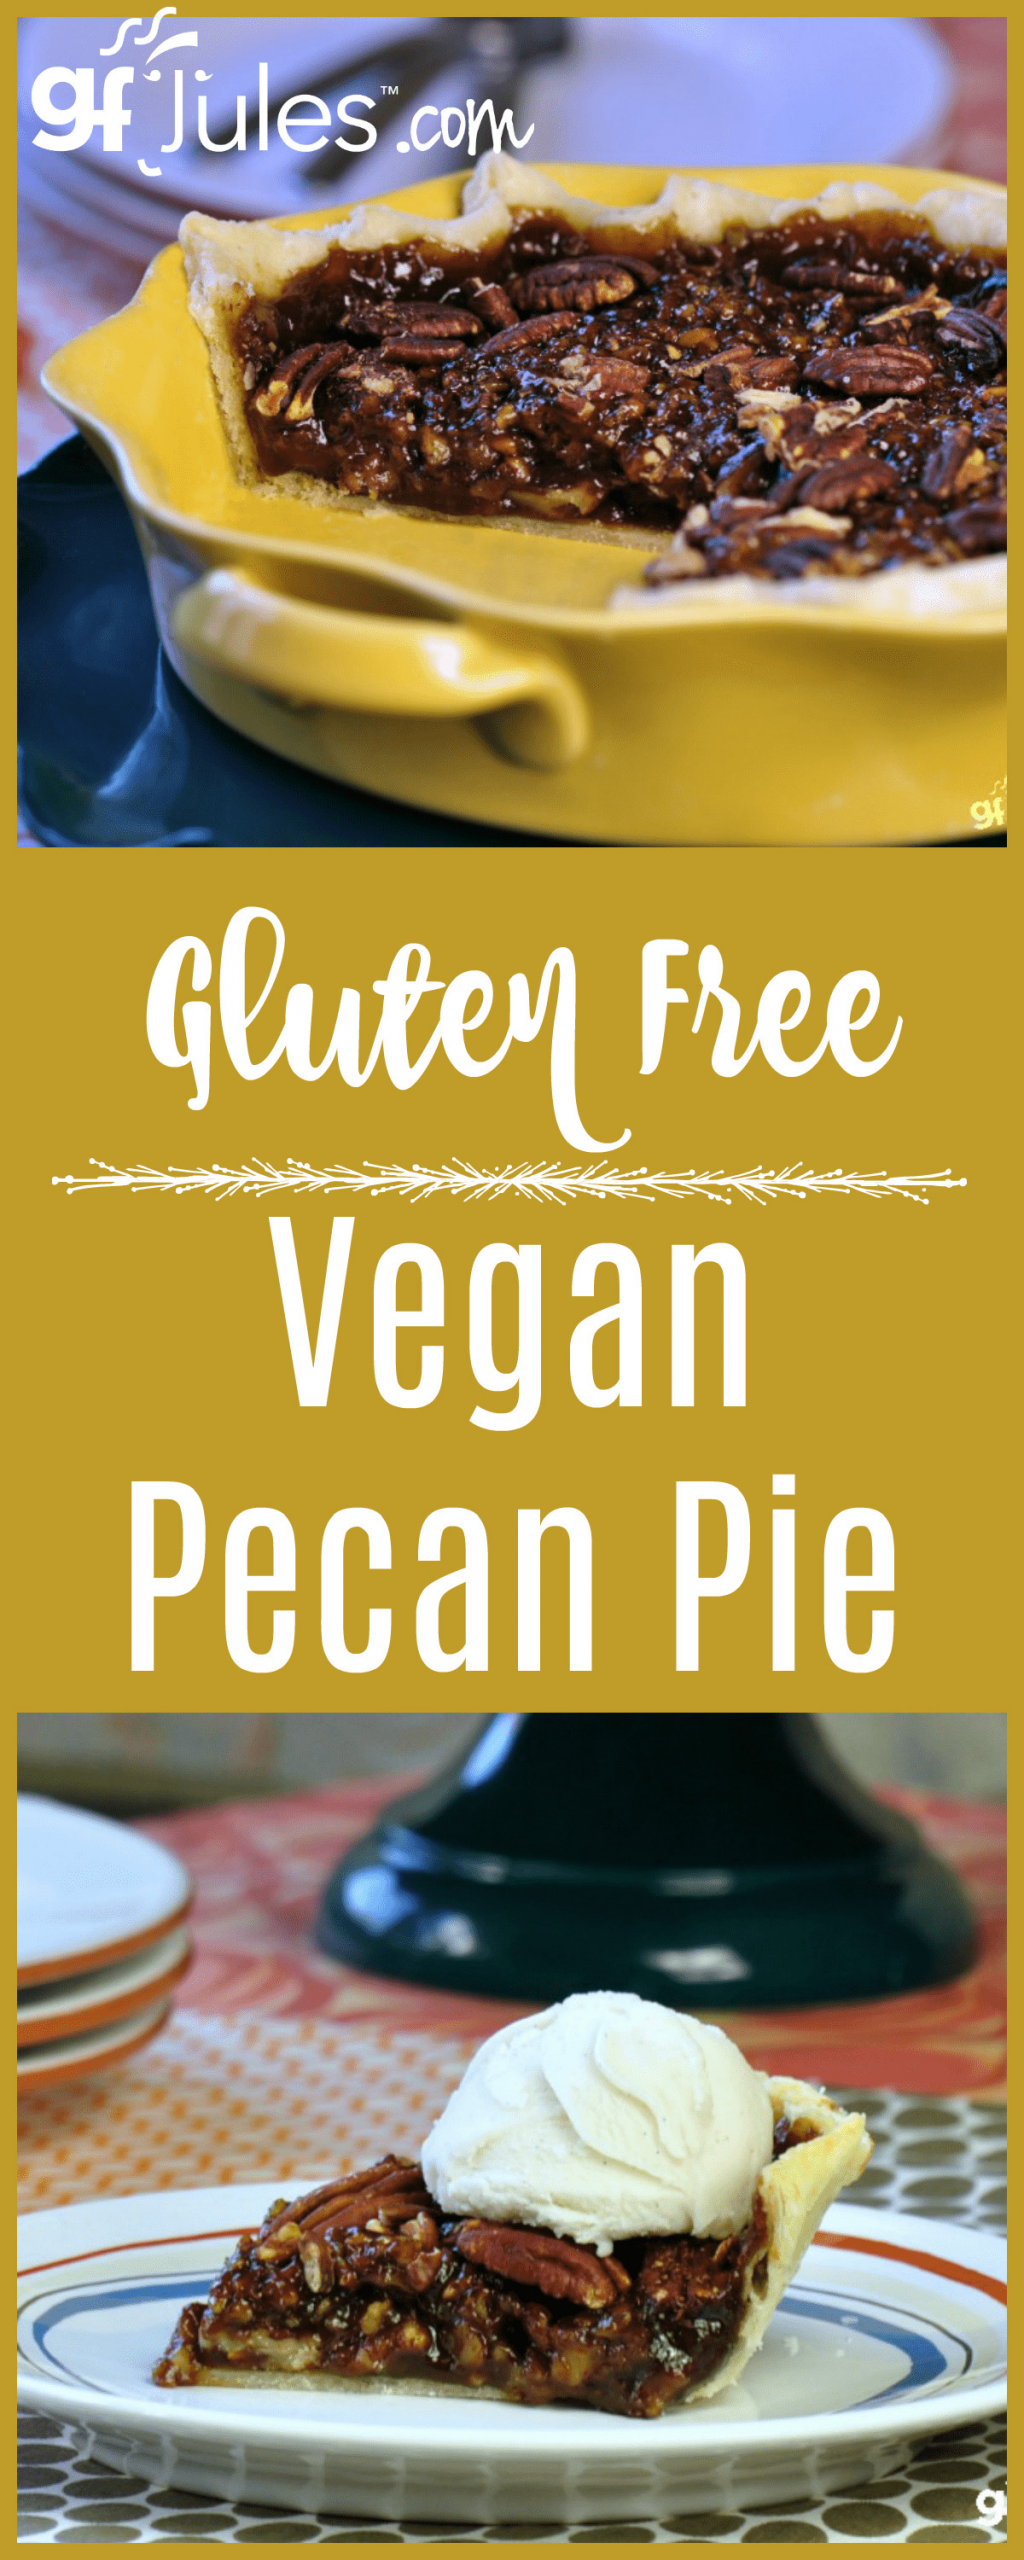 Egg Substitute For Pecan Pie
 Gluten Free Vegan Pecan Pie Recipe holiday recipes gfJules